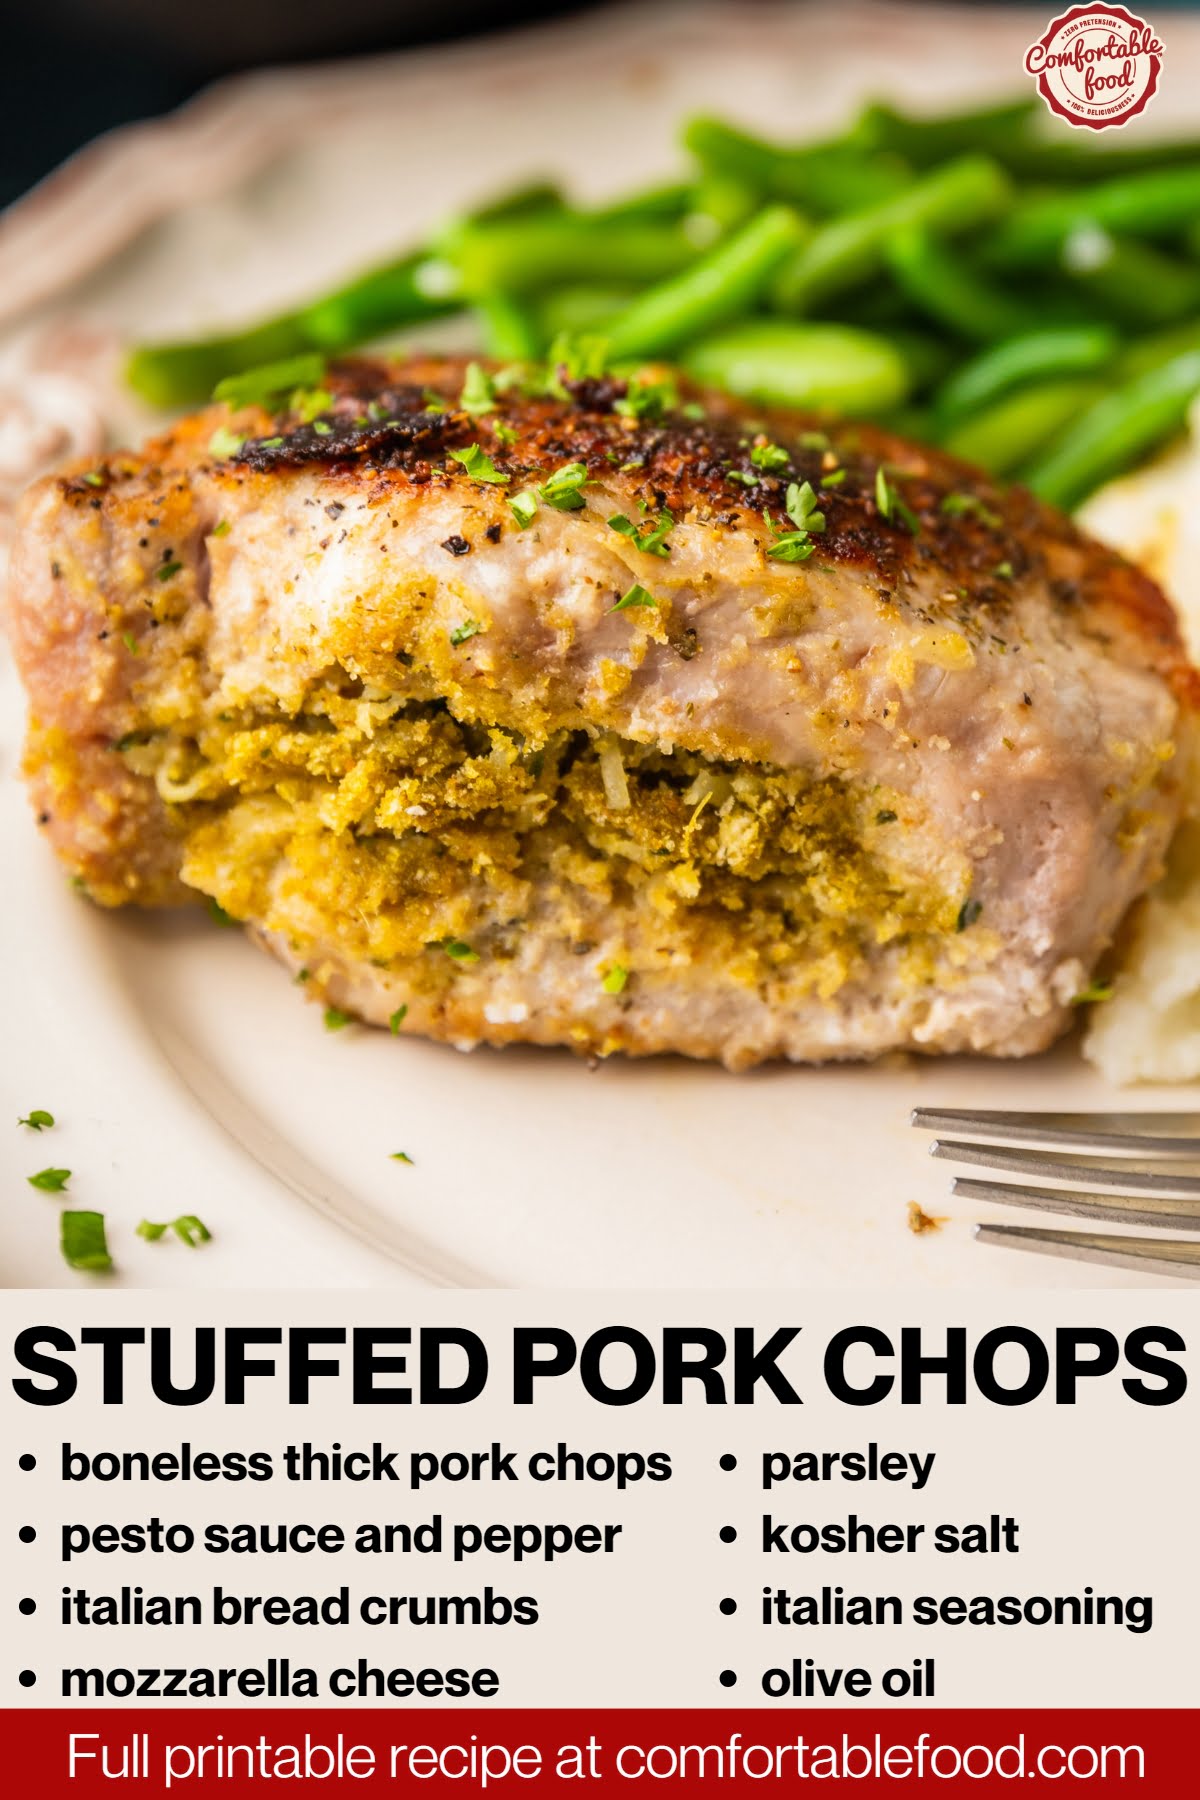 Stuffed pork chops socials3